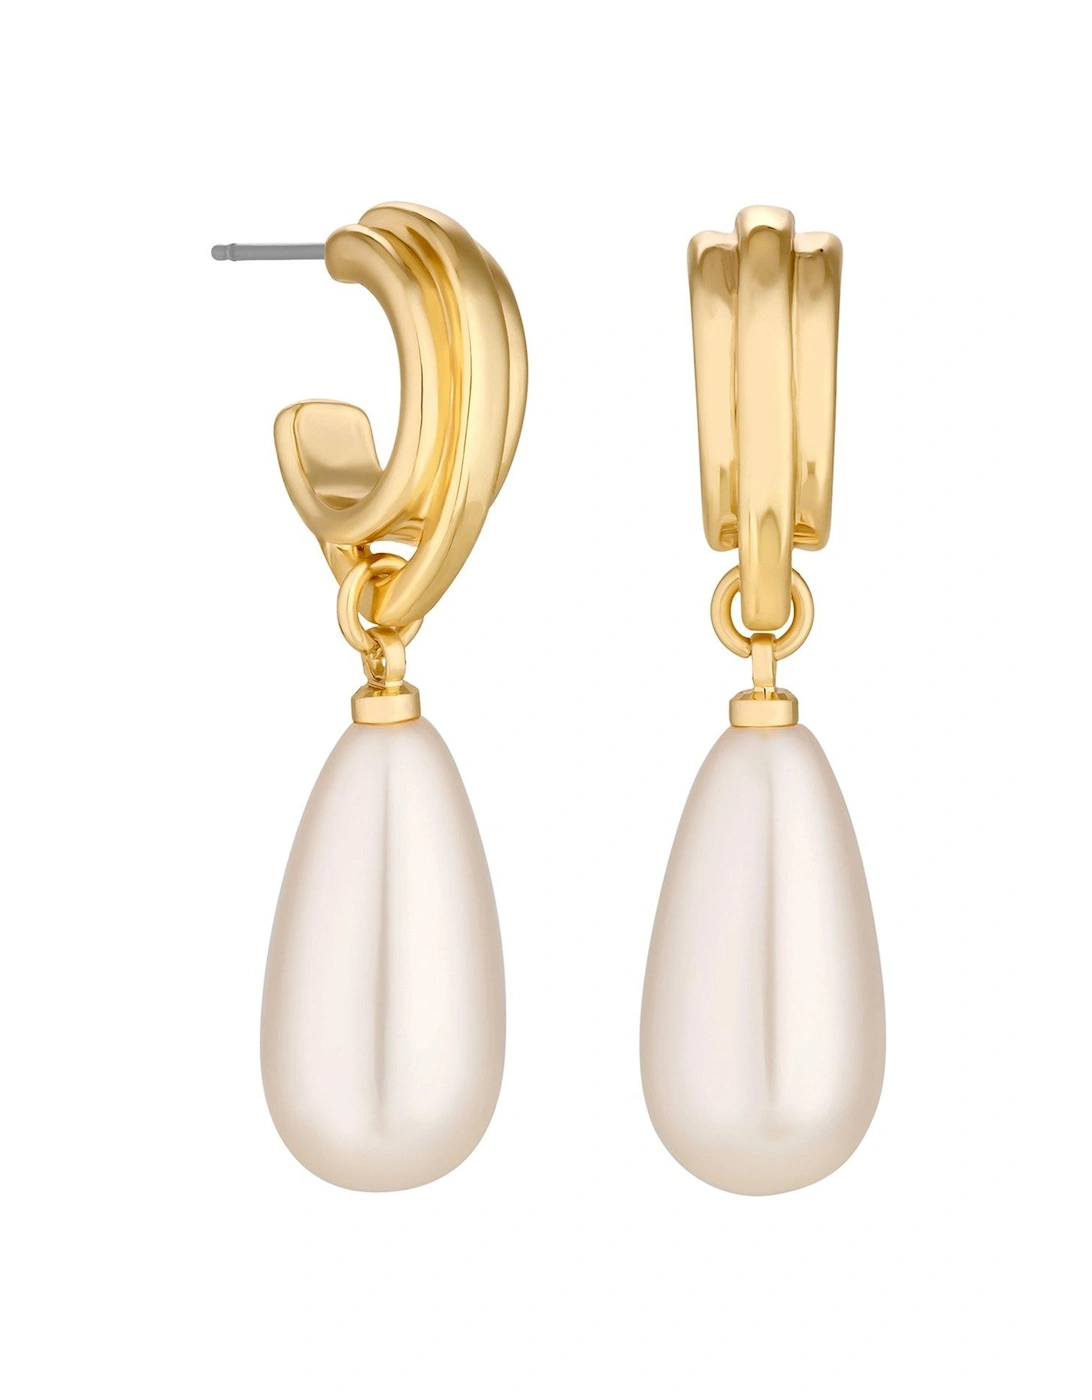 Gold Plated Vintage Inspired Pearl Hoop Earrings, 2 of 1